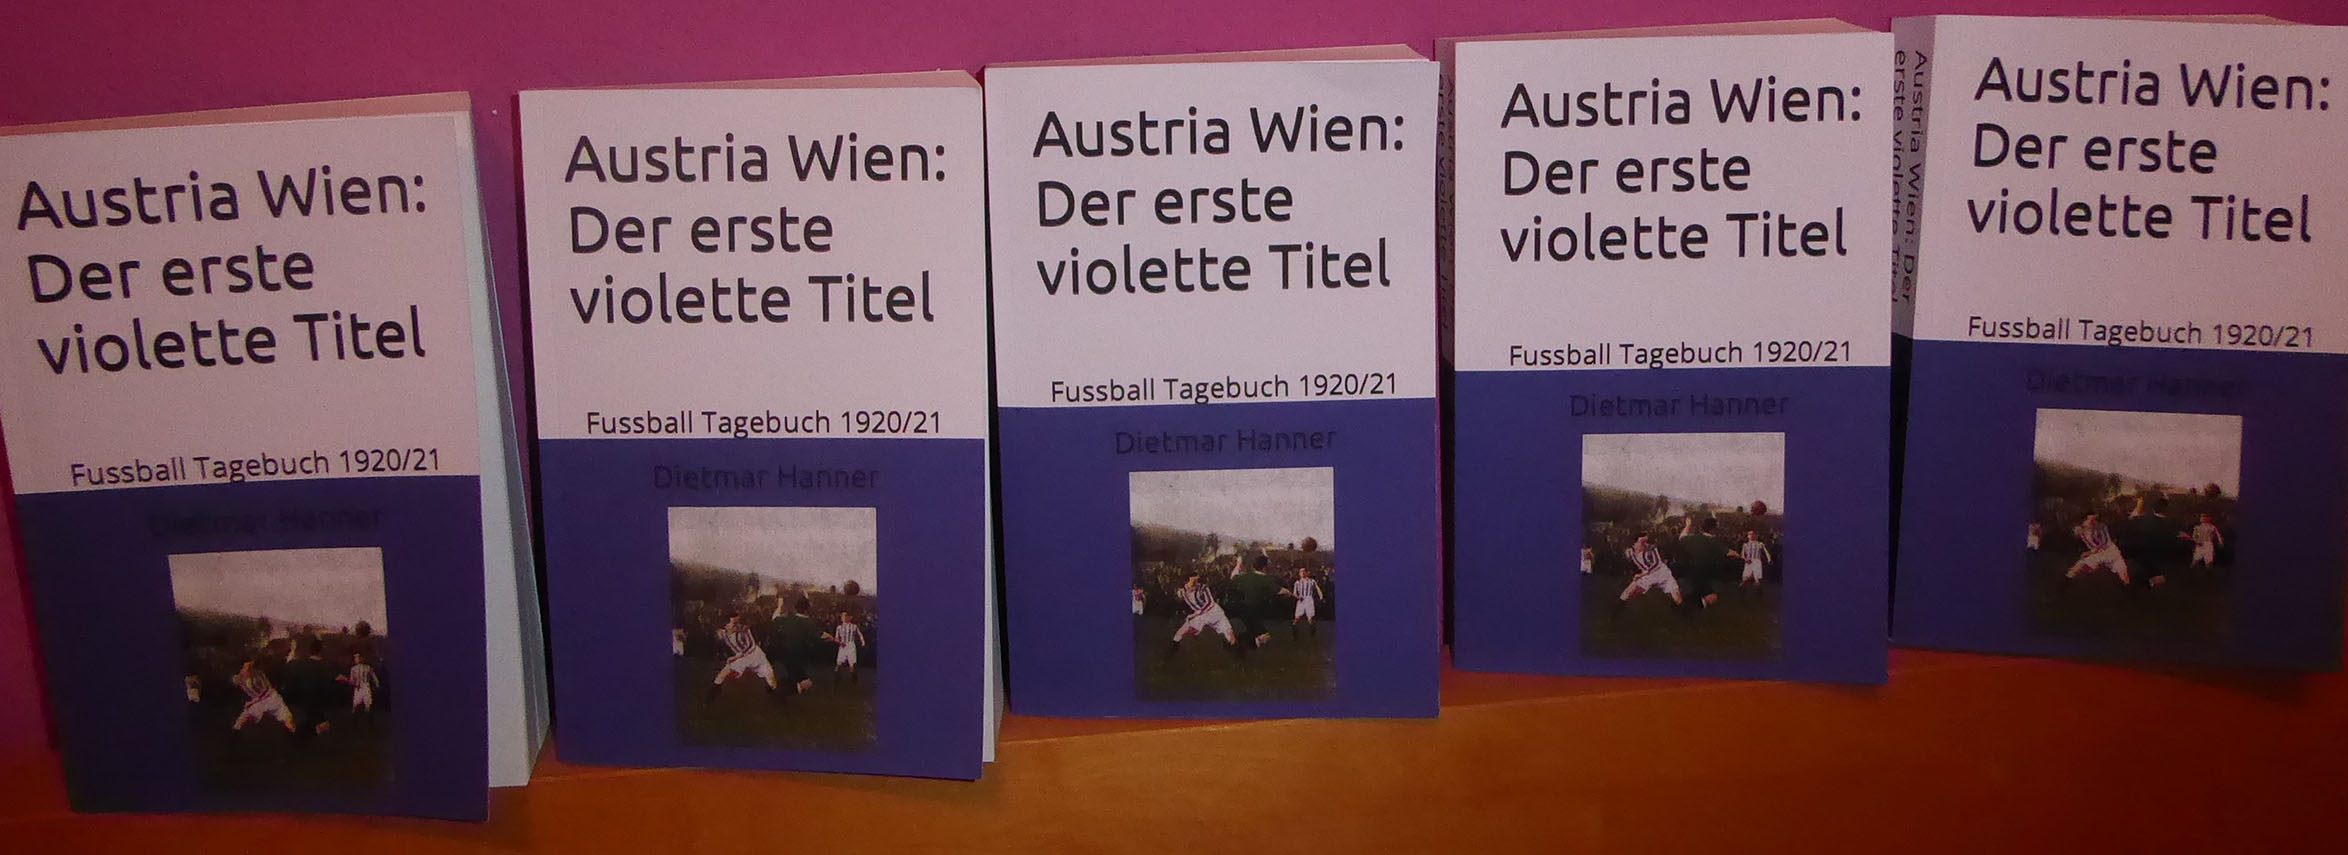 Austria Wien: Der erste violette Titel 1920/21